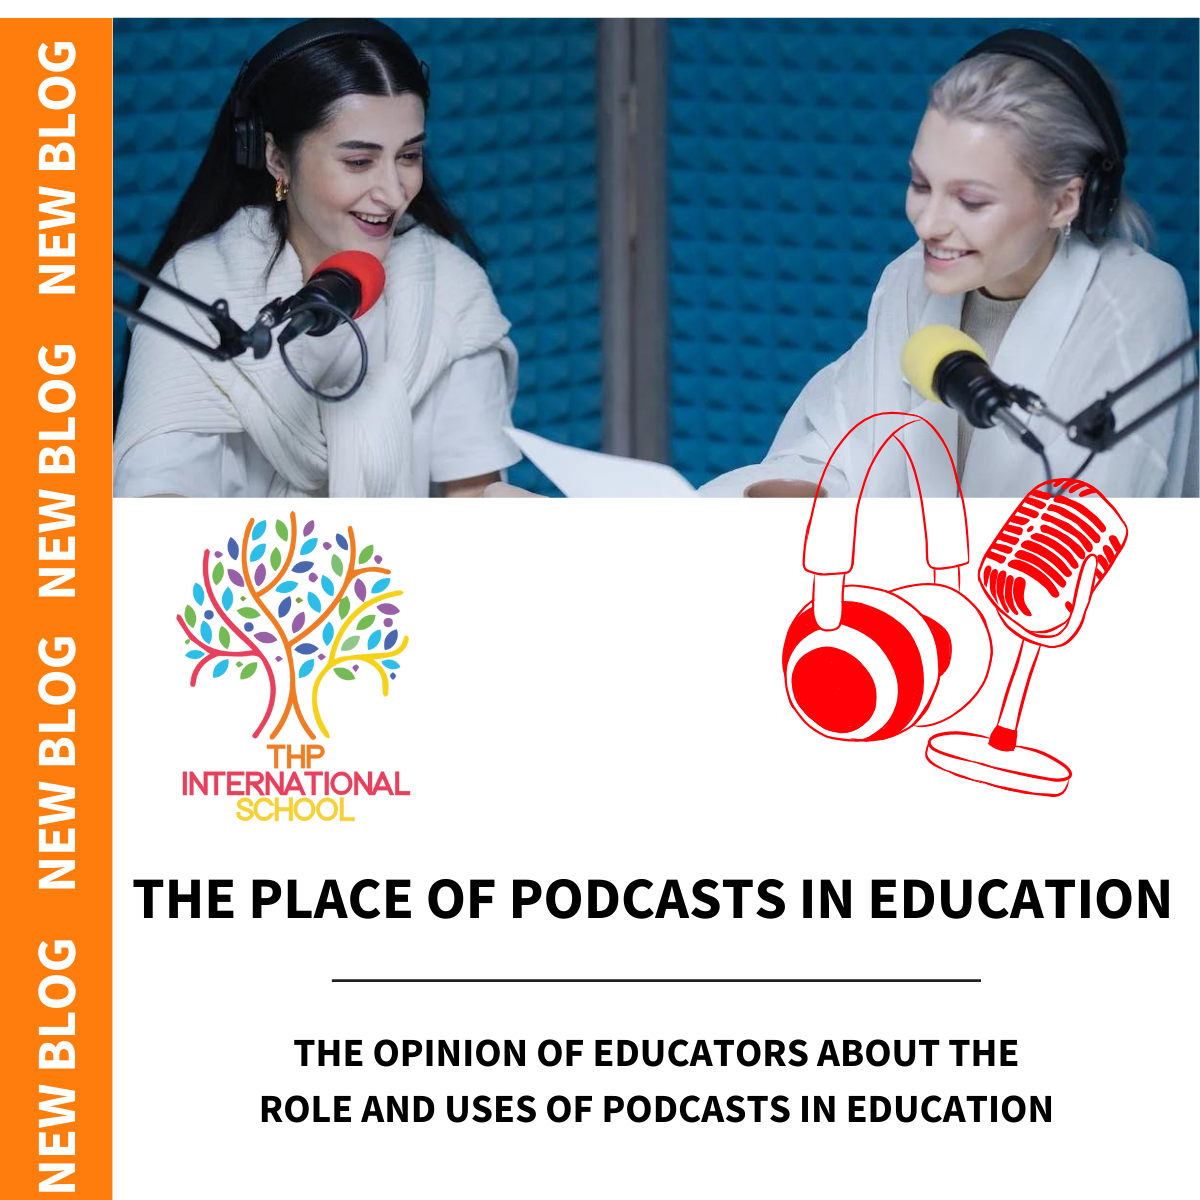 El papel de los podcasts en la educación